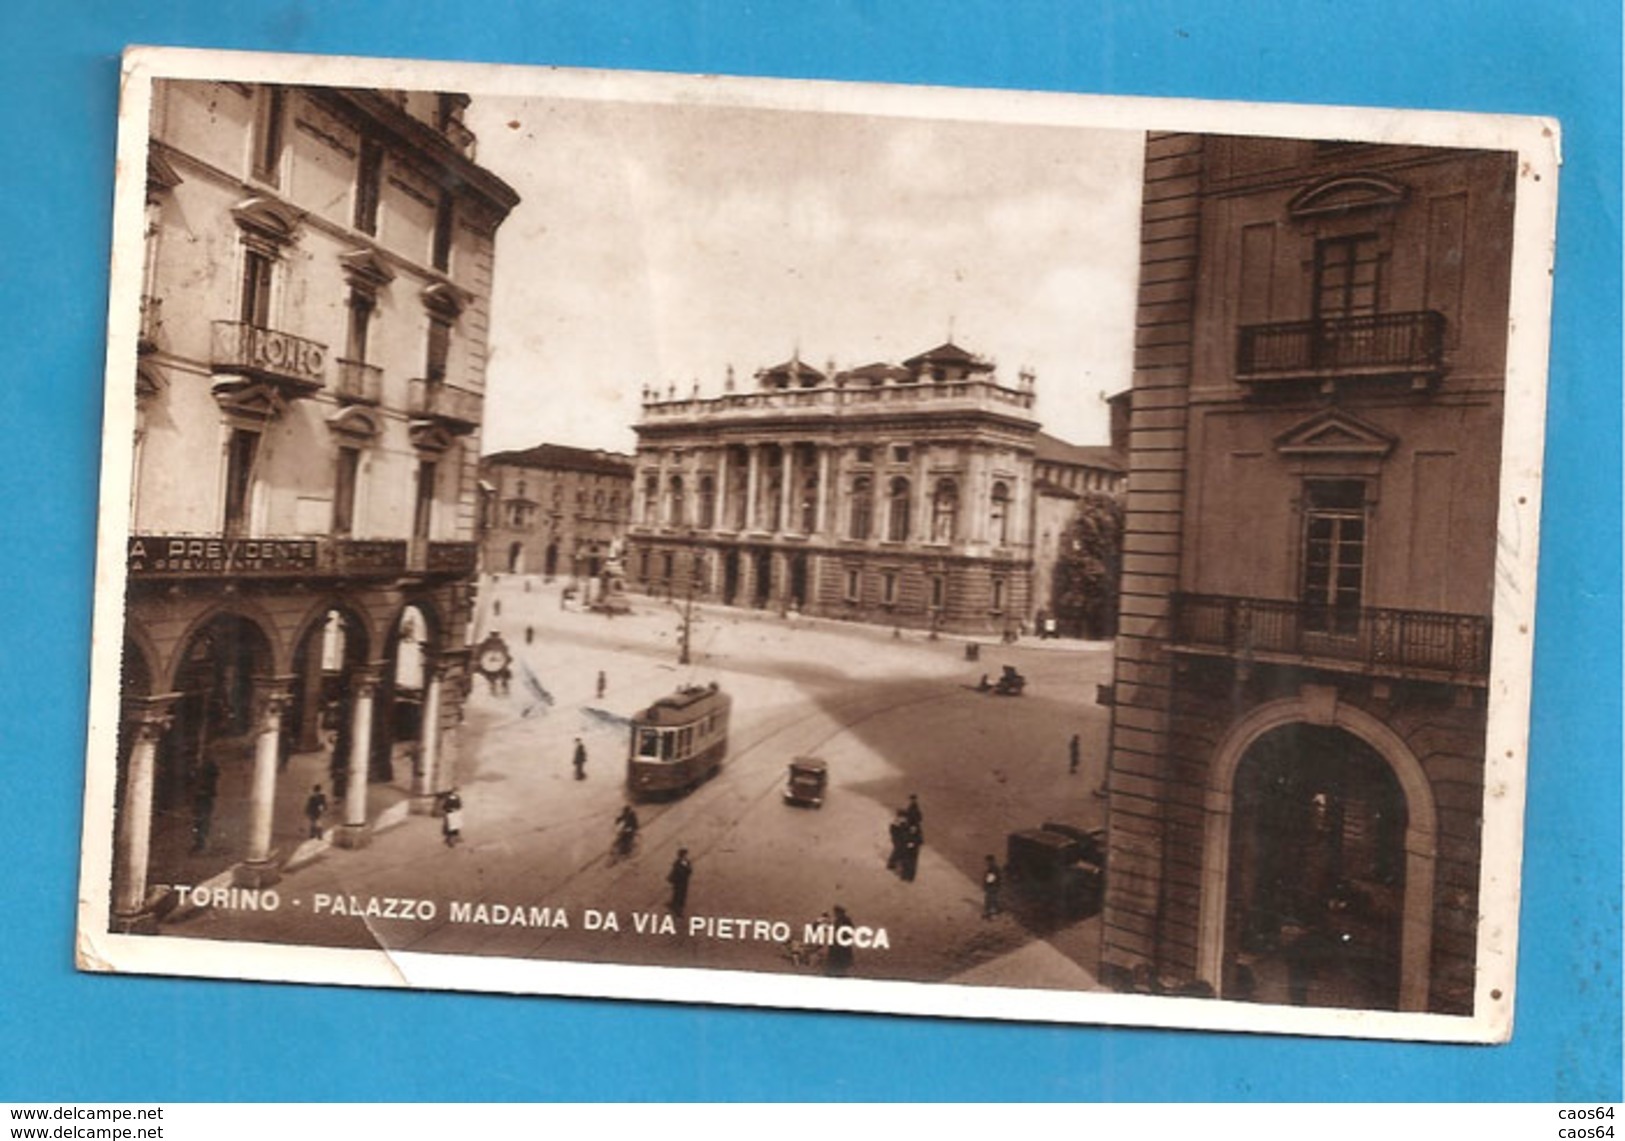 TORINO PALAZZO MADAMA DA VIA PIETRO MICCA - ANIMATA TRAM CARTOLINA FORMATO PICCOLO  1949 - Palazzo Madama